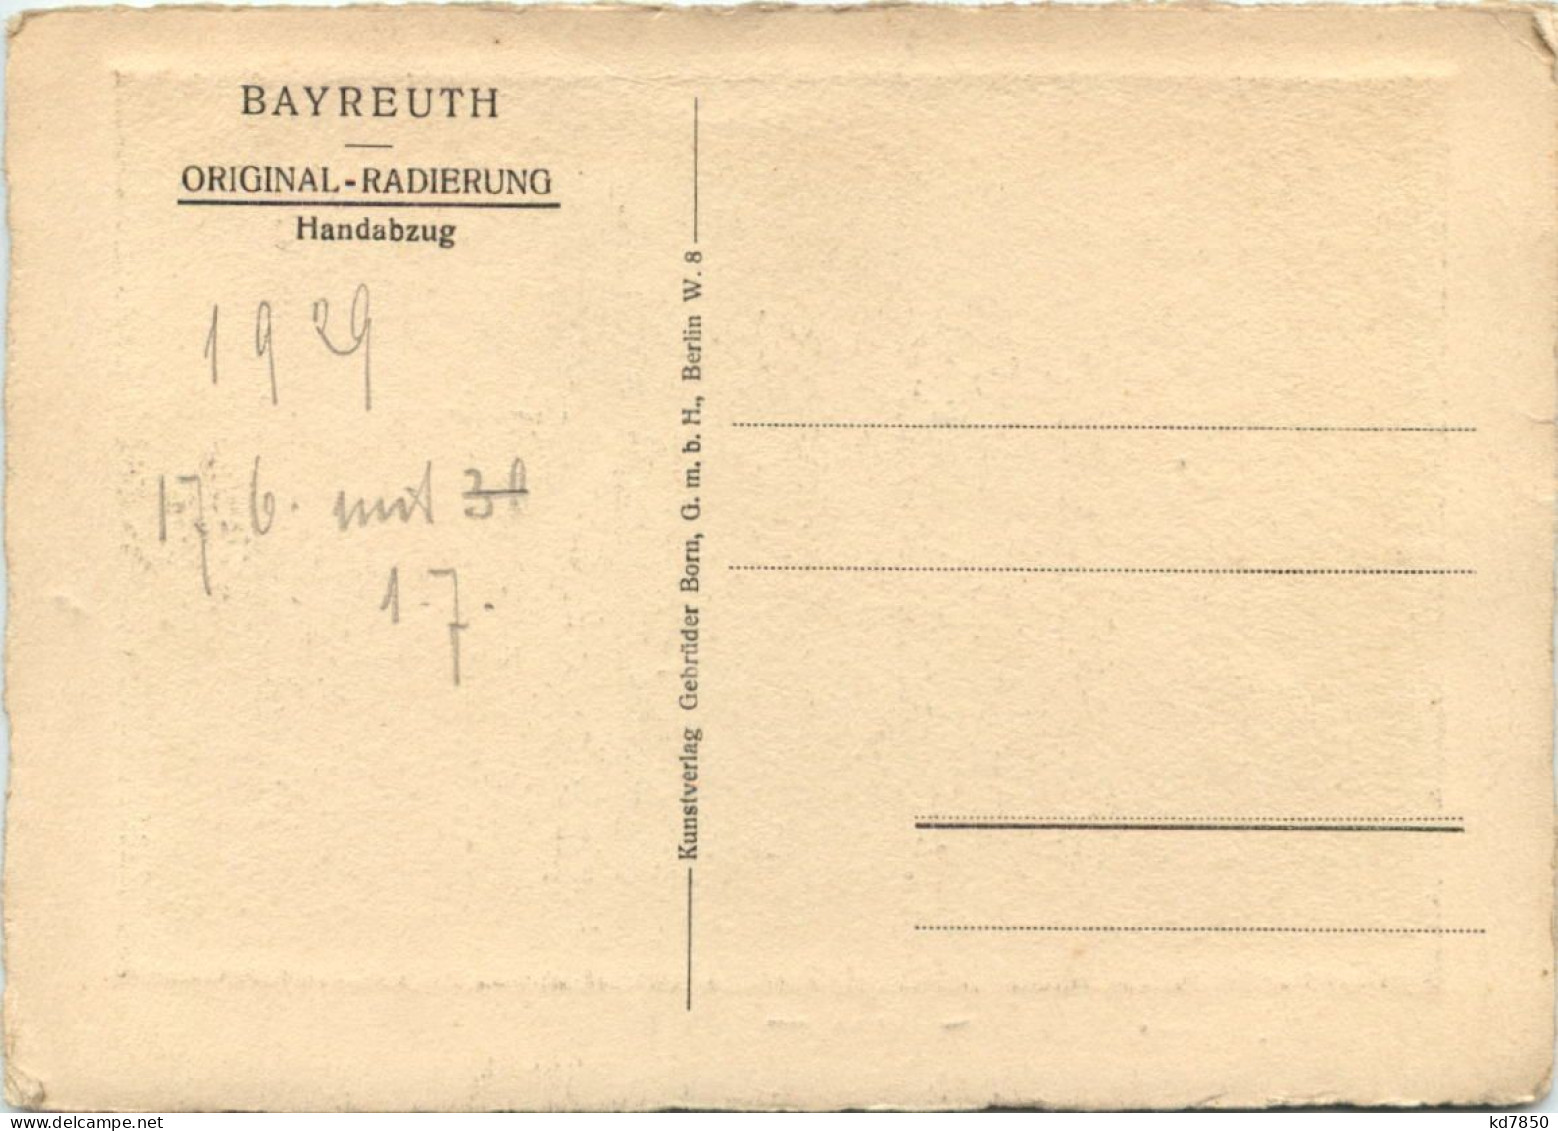 Bayreuth - Radierung - Bayreuth